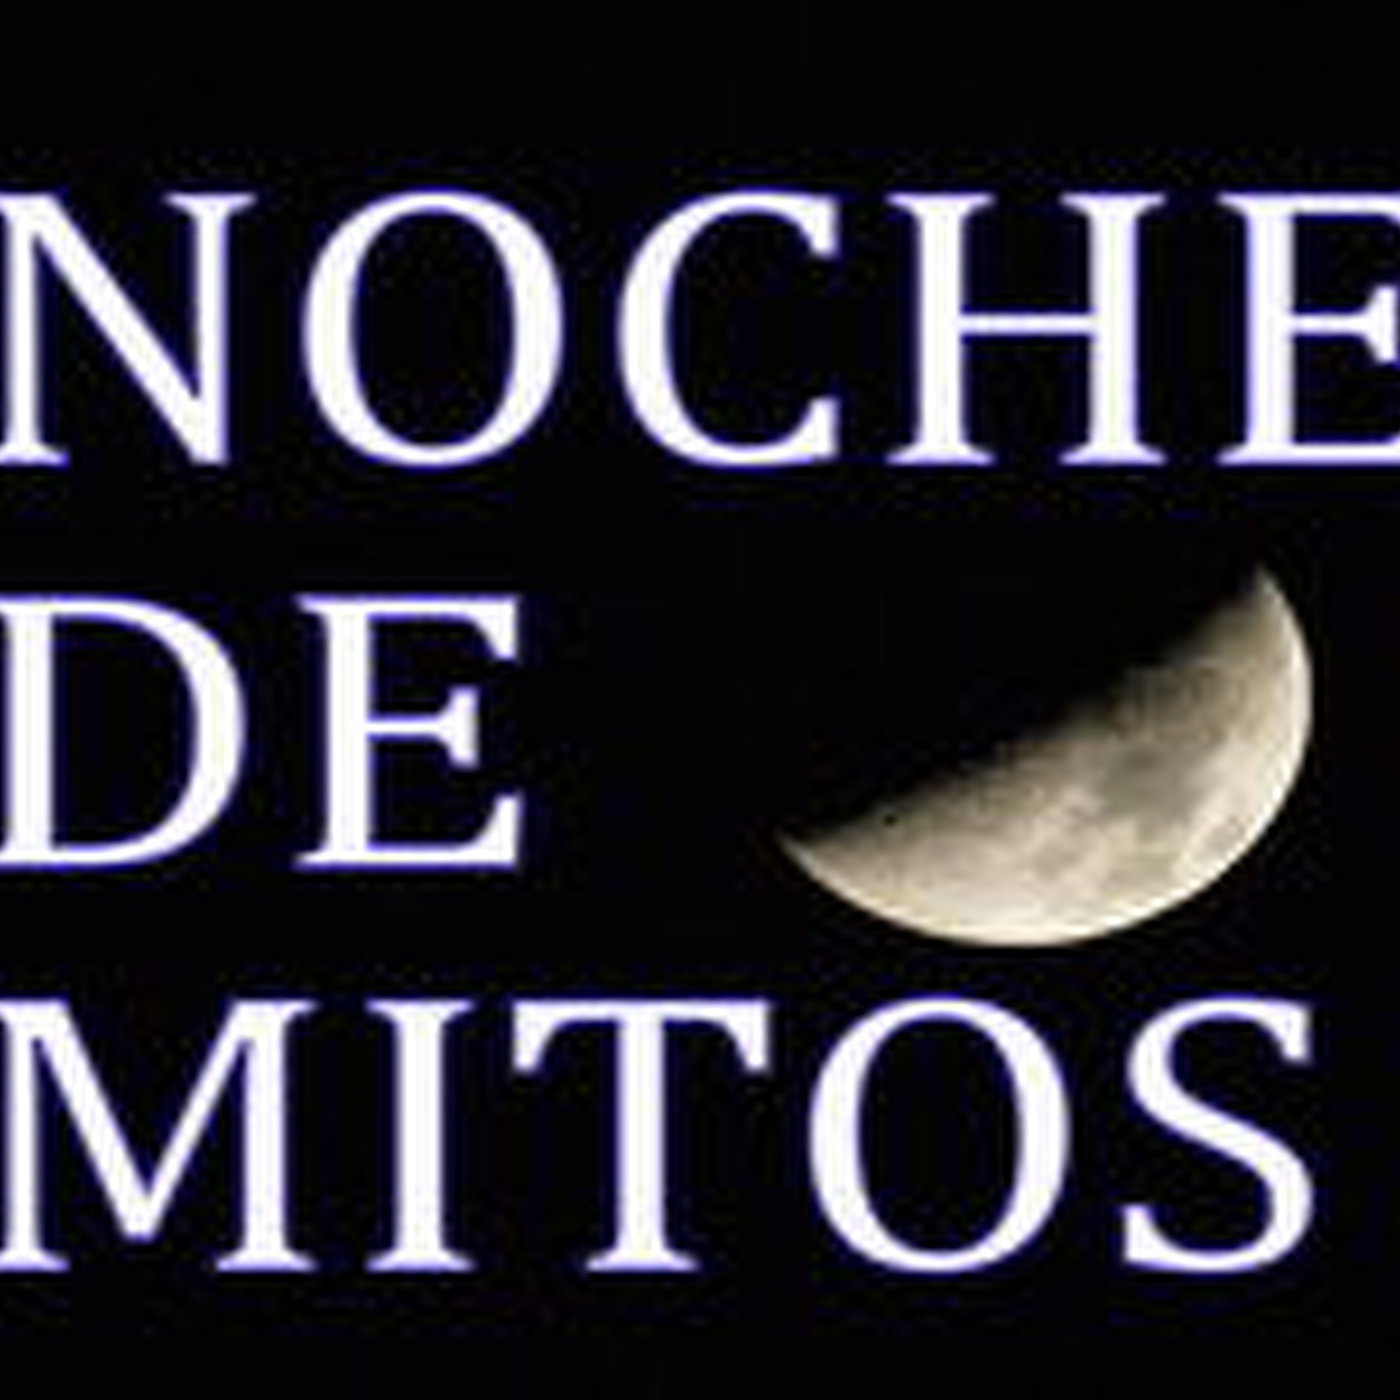 Noche de Mitos (13) Mitos sobre el reino celestial, ángeles y altos astrales - Entrevista a Antonio Pinero